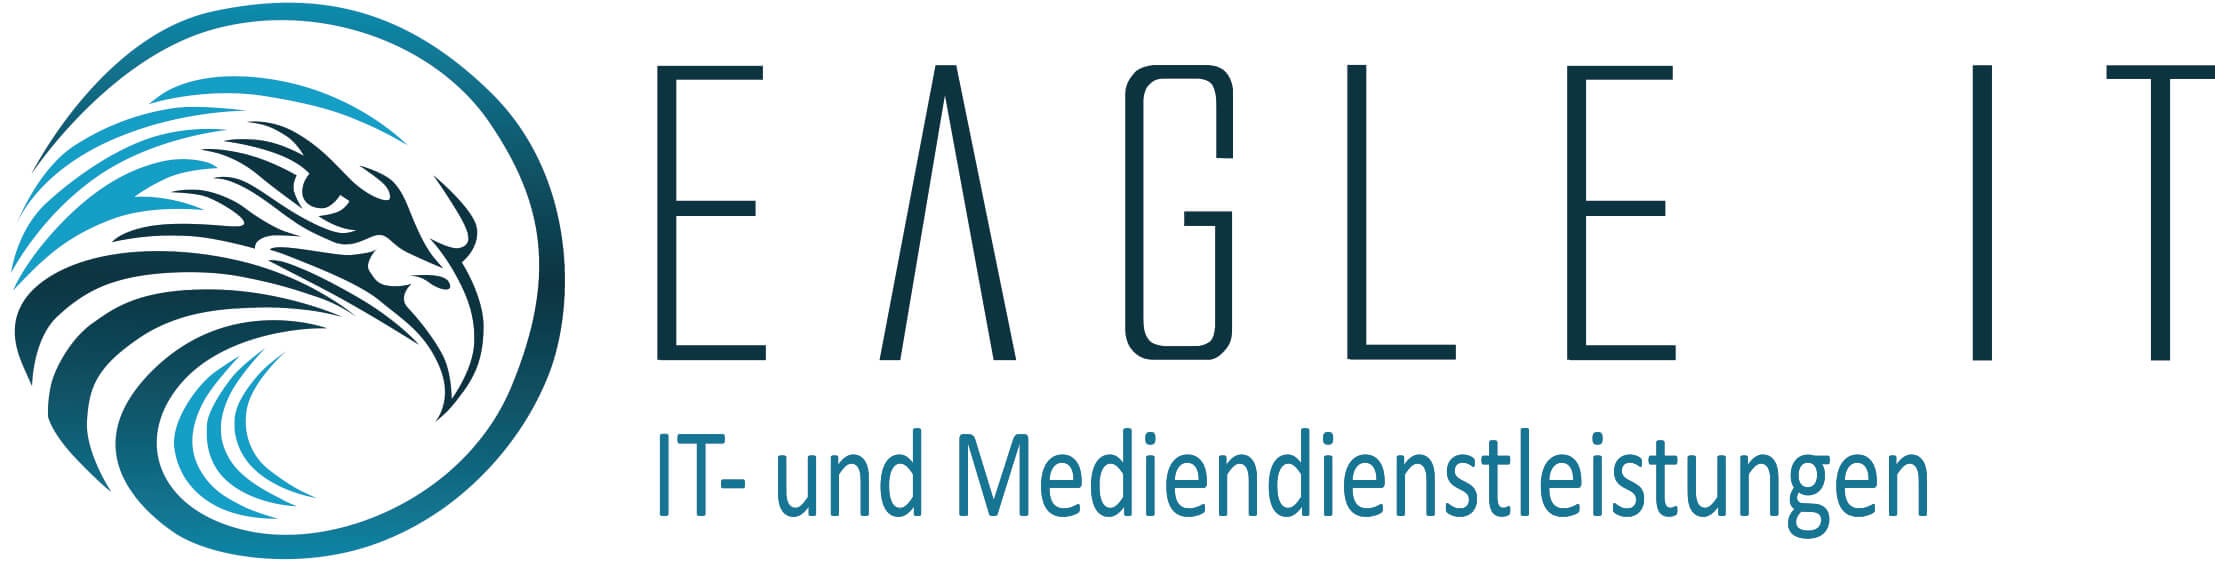 Logo_eagleIt_medien stella client